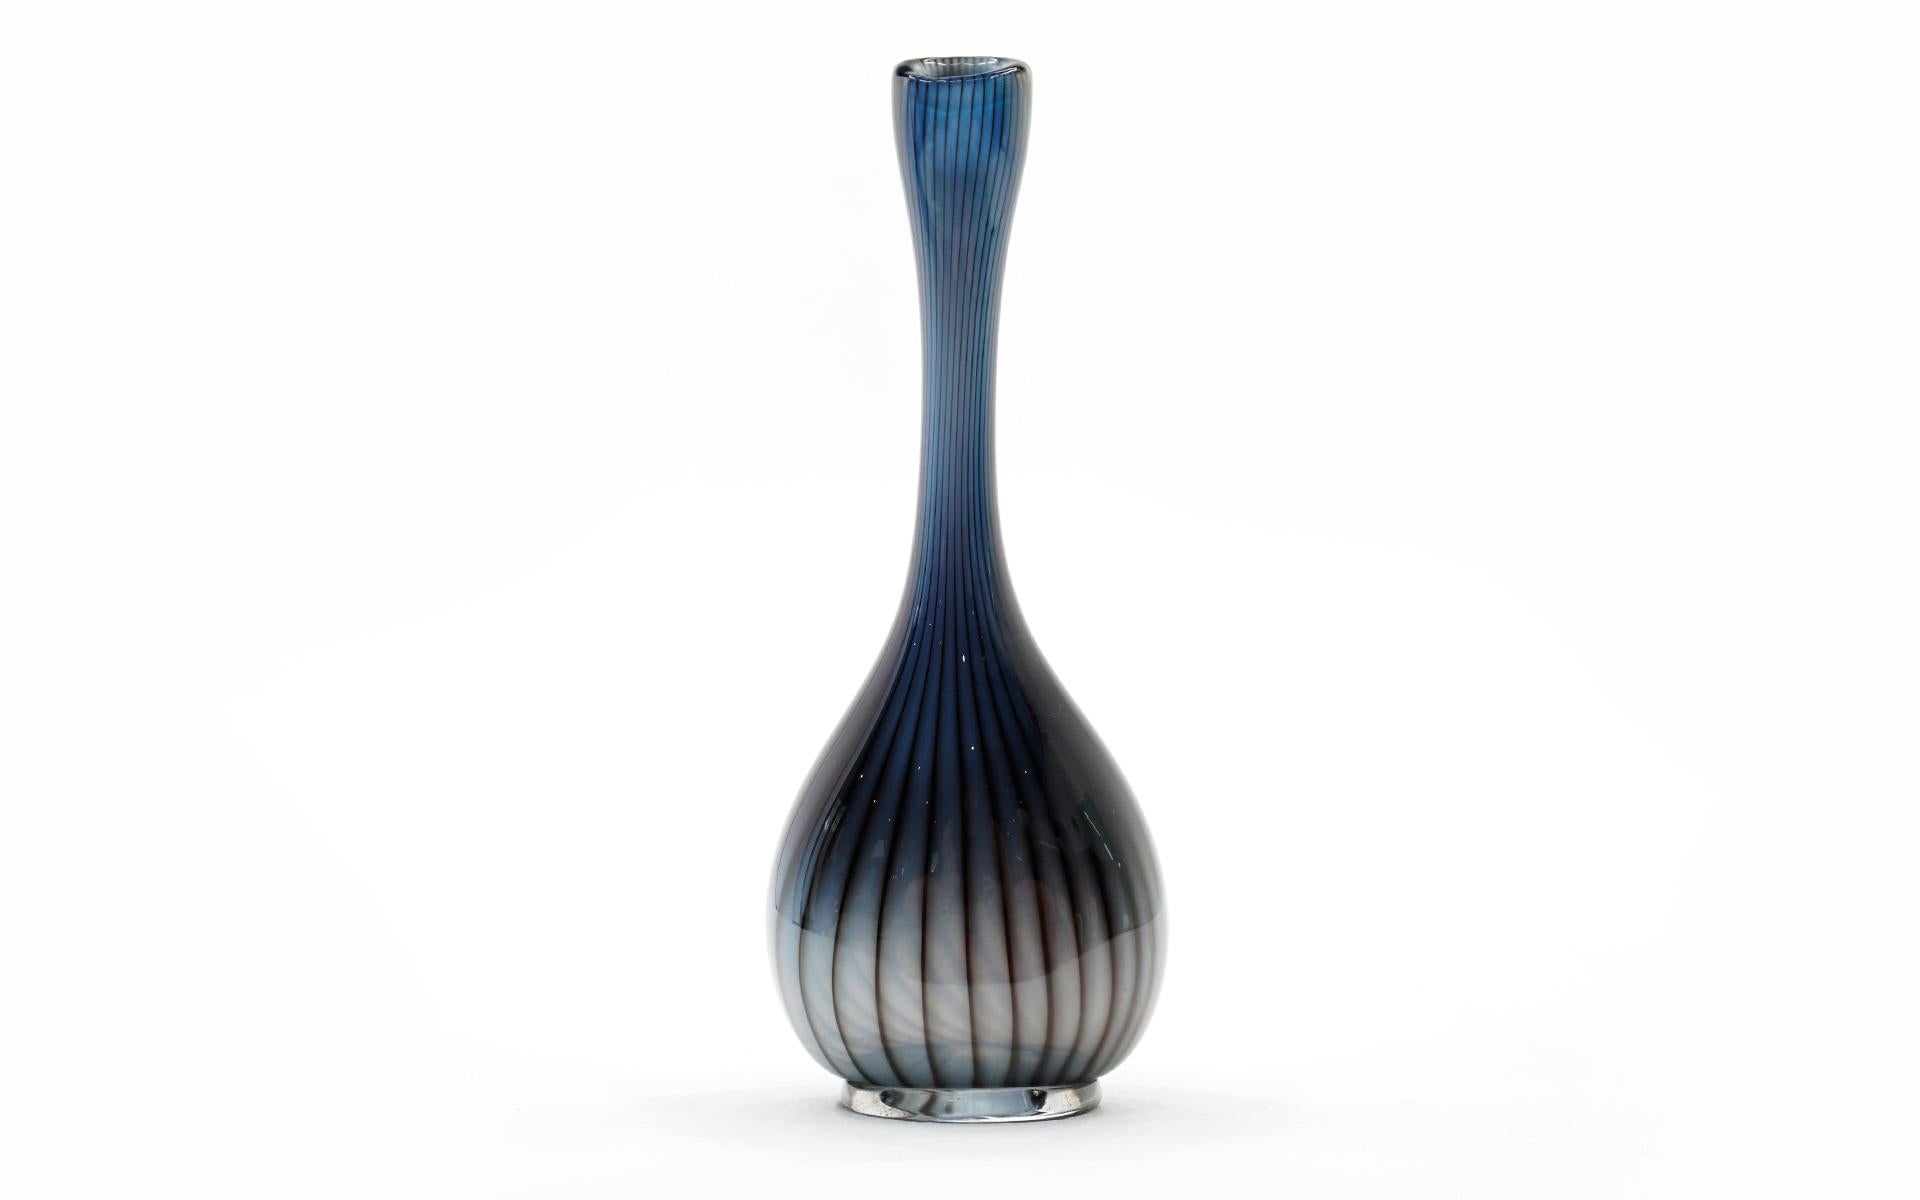 Vase en verre d'art moderne du milieu du siècle, à bourgeons bleus, réalisé par l'artiste verrier suédois Vicke Lindstrand pour Kosta Boda, vers 1950. De la série 